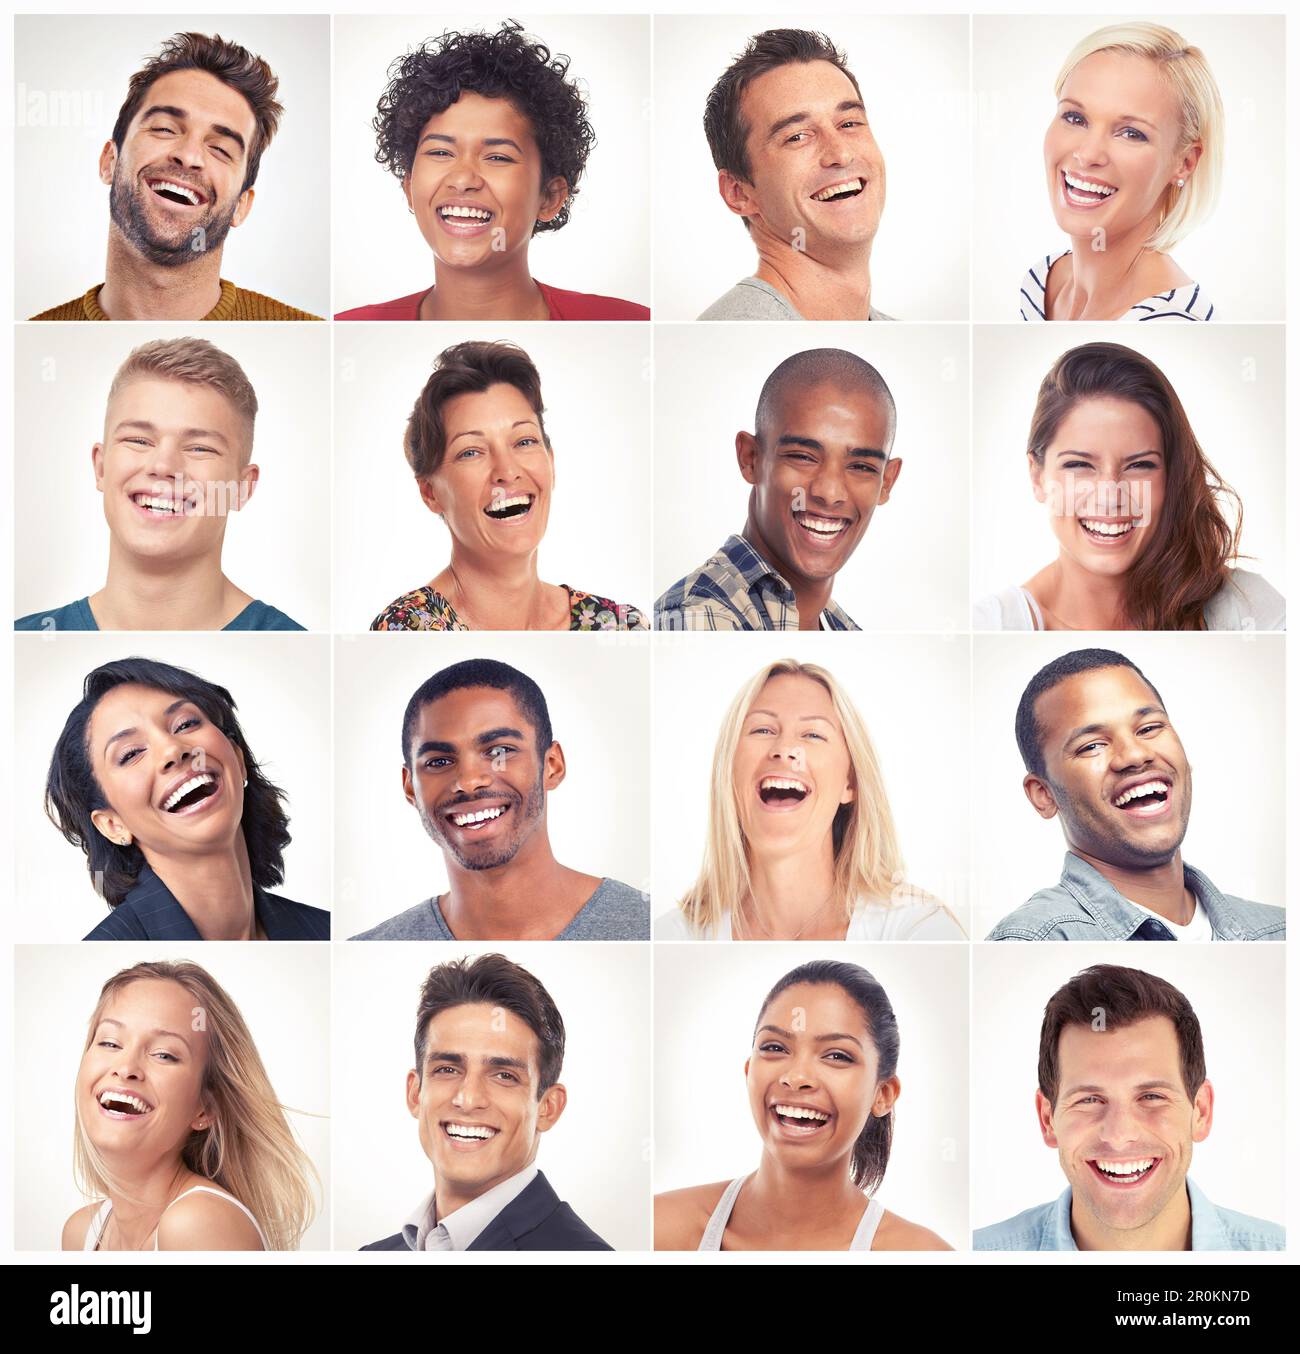 Lachen, Face Collage oder Portrait von glücklichen Menschen in einer Community-Gruppe oder Vielfalt mit Witzen oder Komödien. Lustige Studiofotos, Profilfotos oder Stockfoto